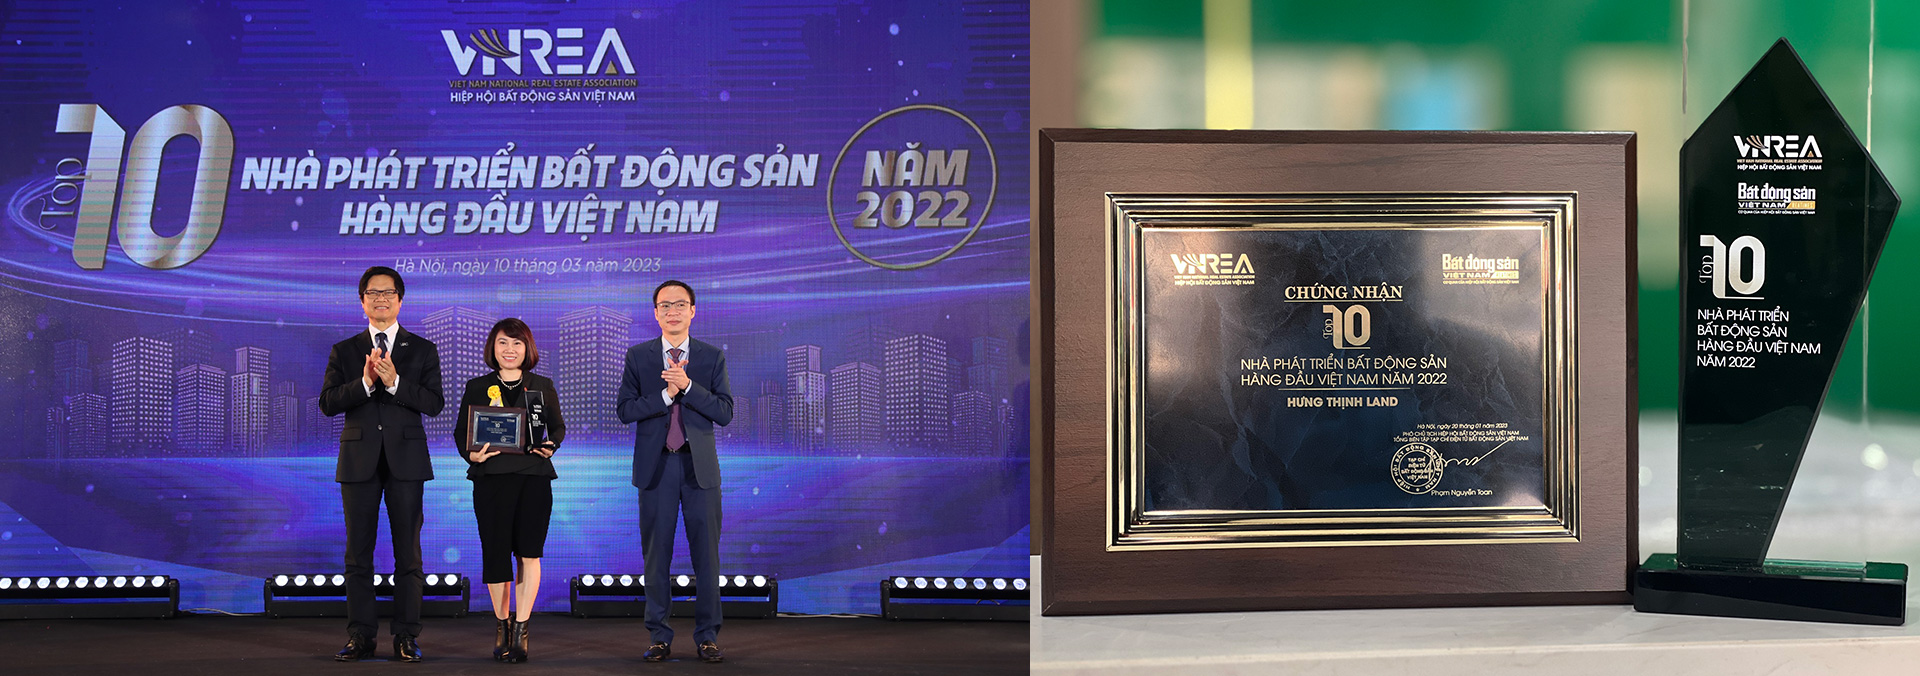 Hưng Thịnh Land nhận cúp và chứng nhận giải thưởng Top 10 Nhà phát triển bất động sản hàng đầu Việt Nam năm 2022